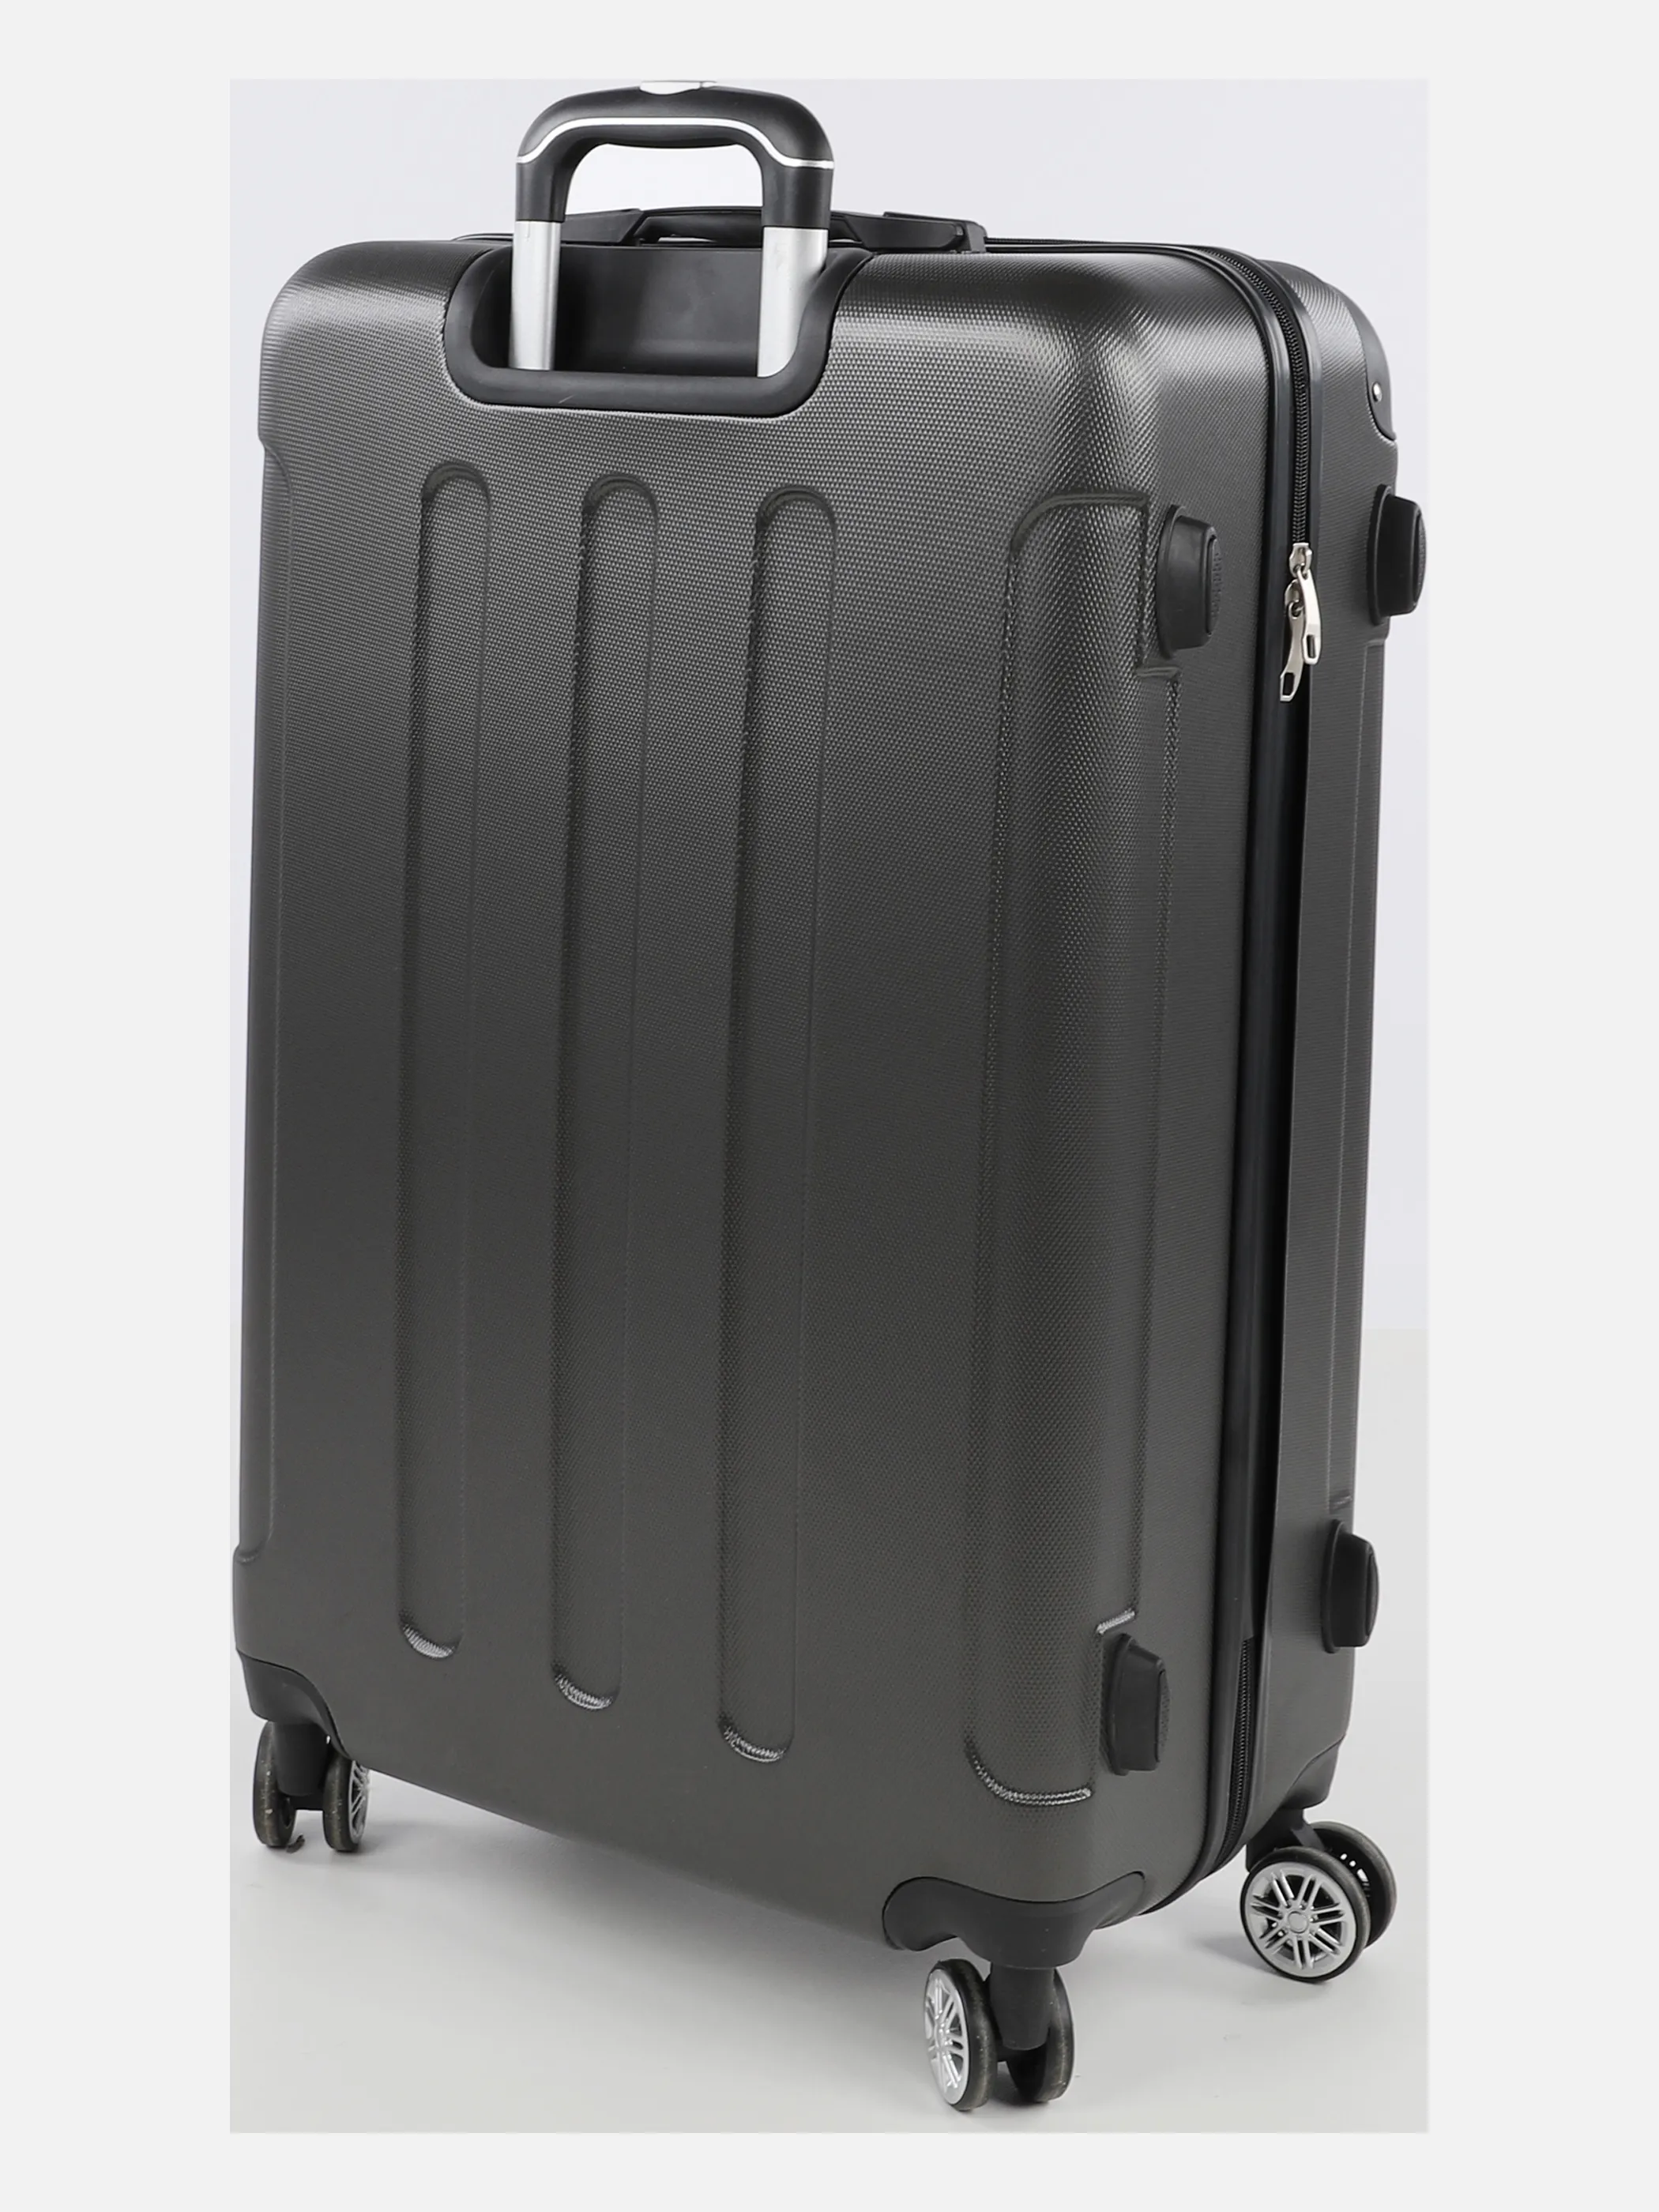 Koffer/Taschen Koffer Avalon S 55x40x22 Grau 884546 ANTHRA 2